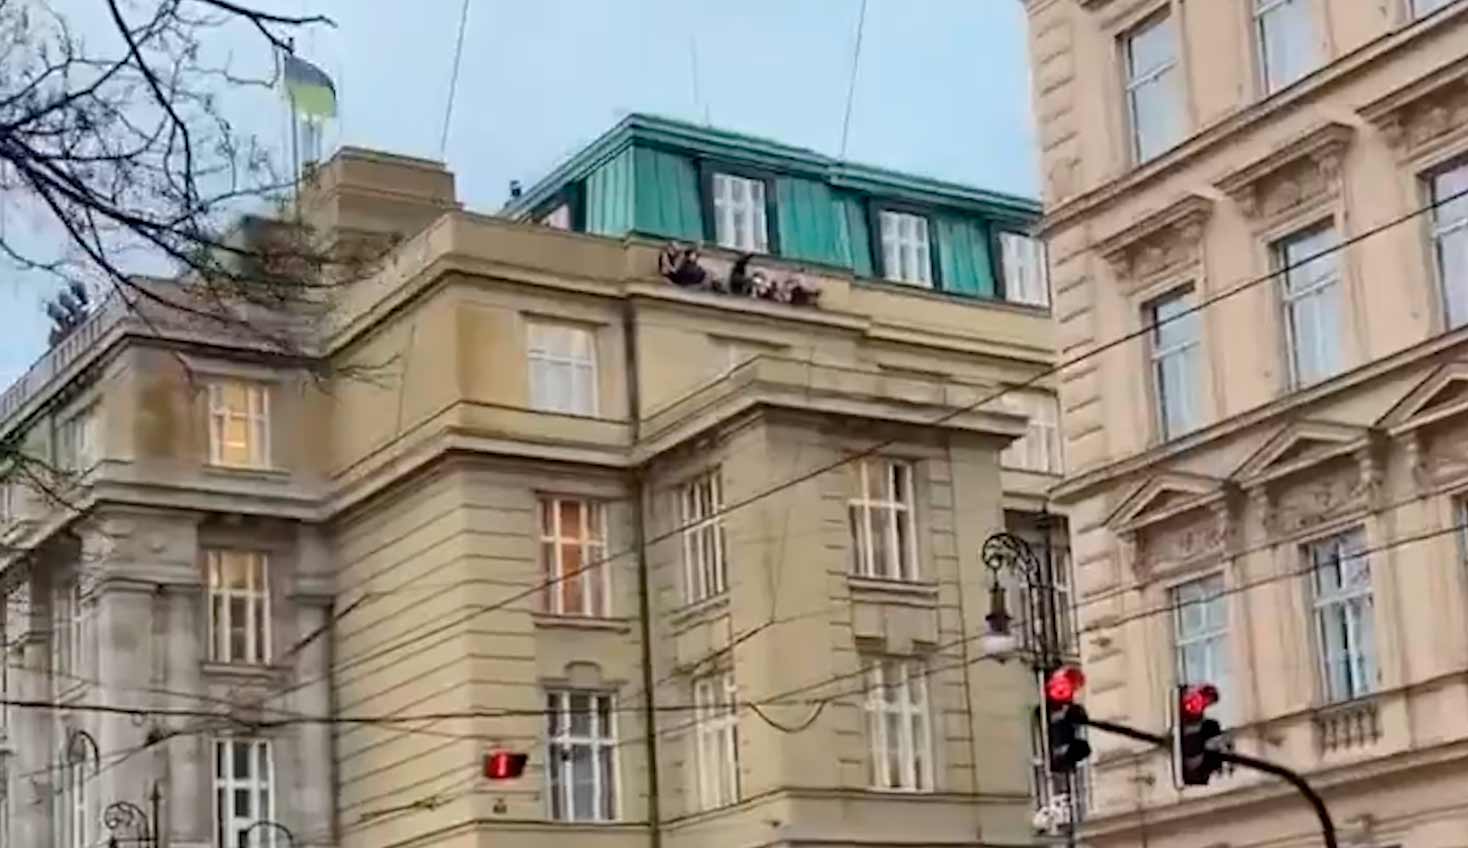 Skottlossning i Prag tar 11 liv efter att en beväpnad angripare öppnat eld på ett universitet. Bilder och video: Twitter @BabakTaghvaee1